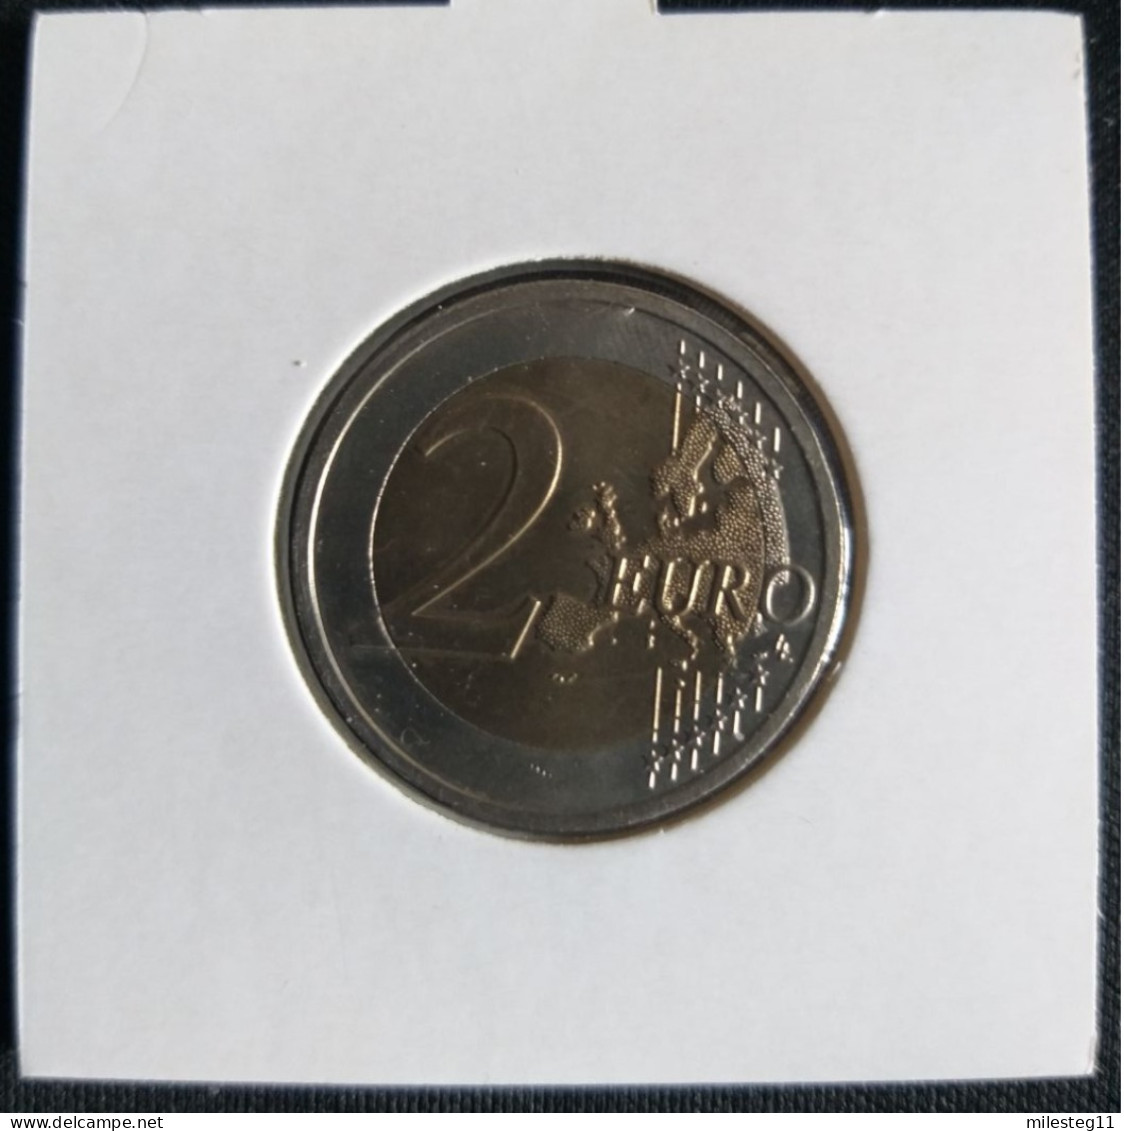 Belgique 2 Euro Commémorative De 2009 (10e Anniversaire De L'Union Monétaire Et Economique) - Belgium